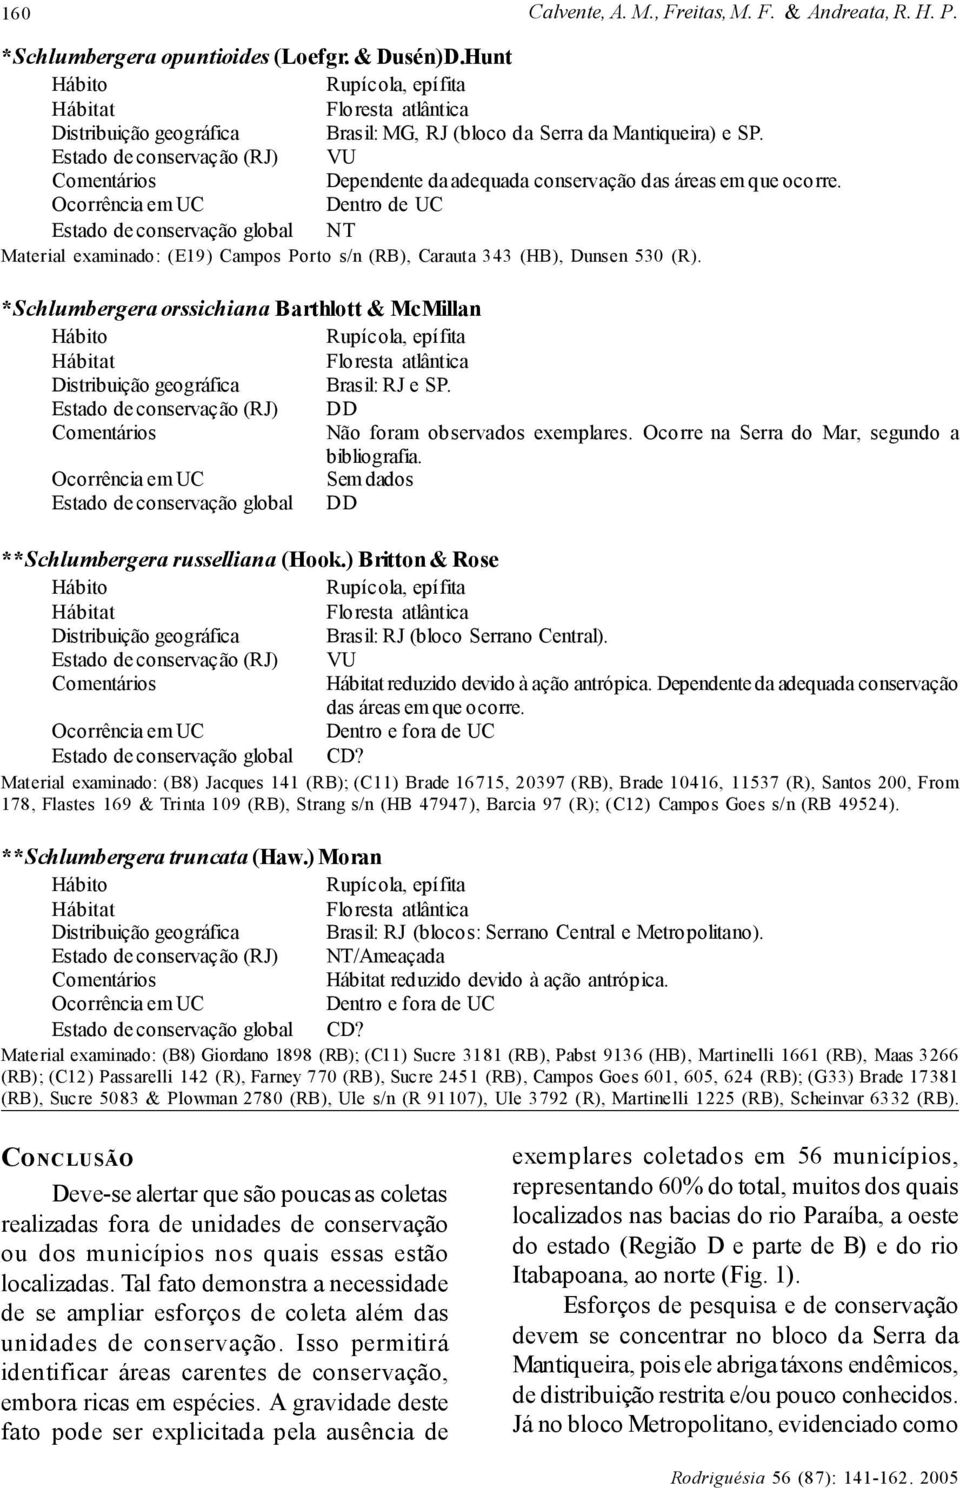 Dentro de UC Estado de conservação global NT Material examinado: (E19) Campos Porto s/n (RB), Carauta 343 (HB), Dunsen 530 (R).